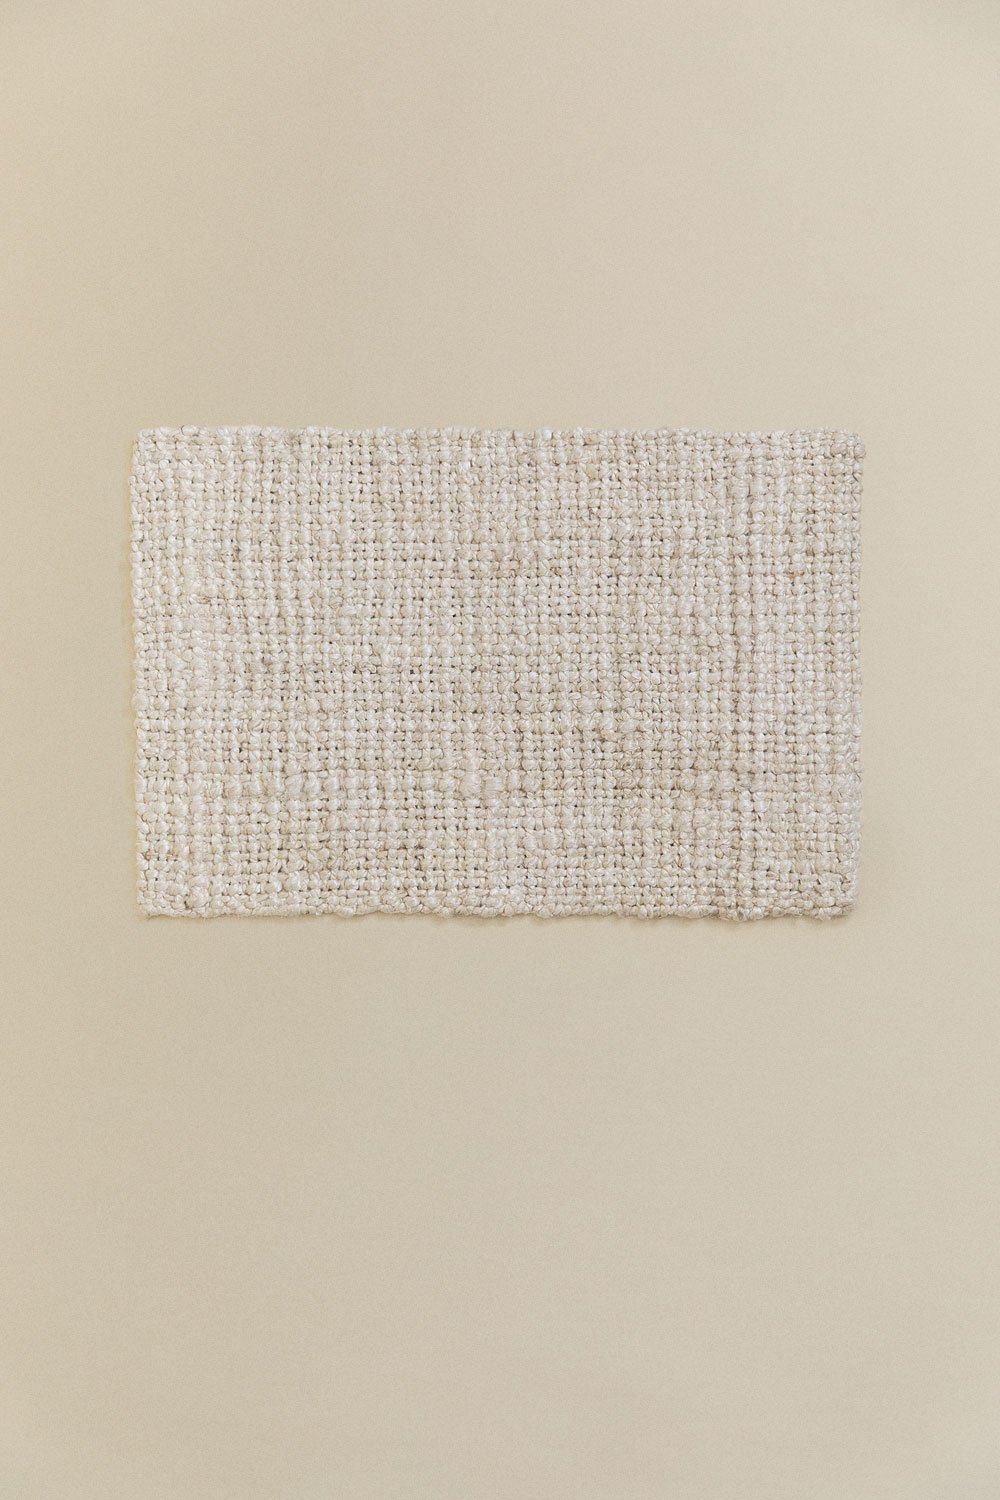 Wycieraczka z juty (61x43 cm) Bartagli, obrazek w galerii 2